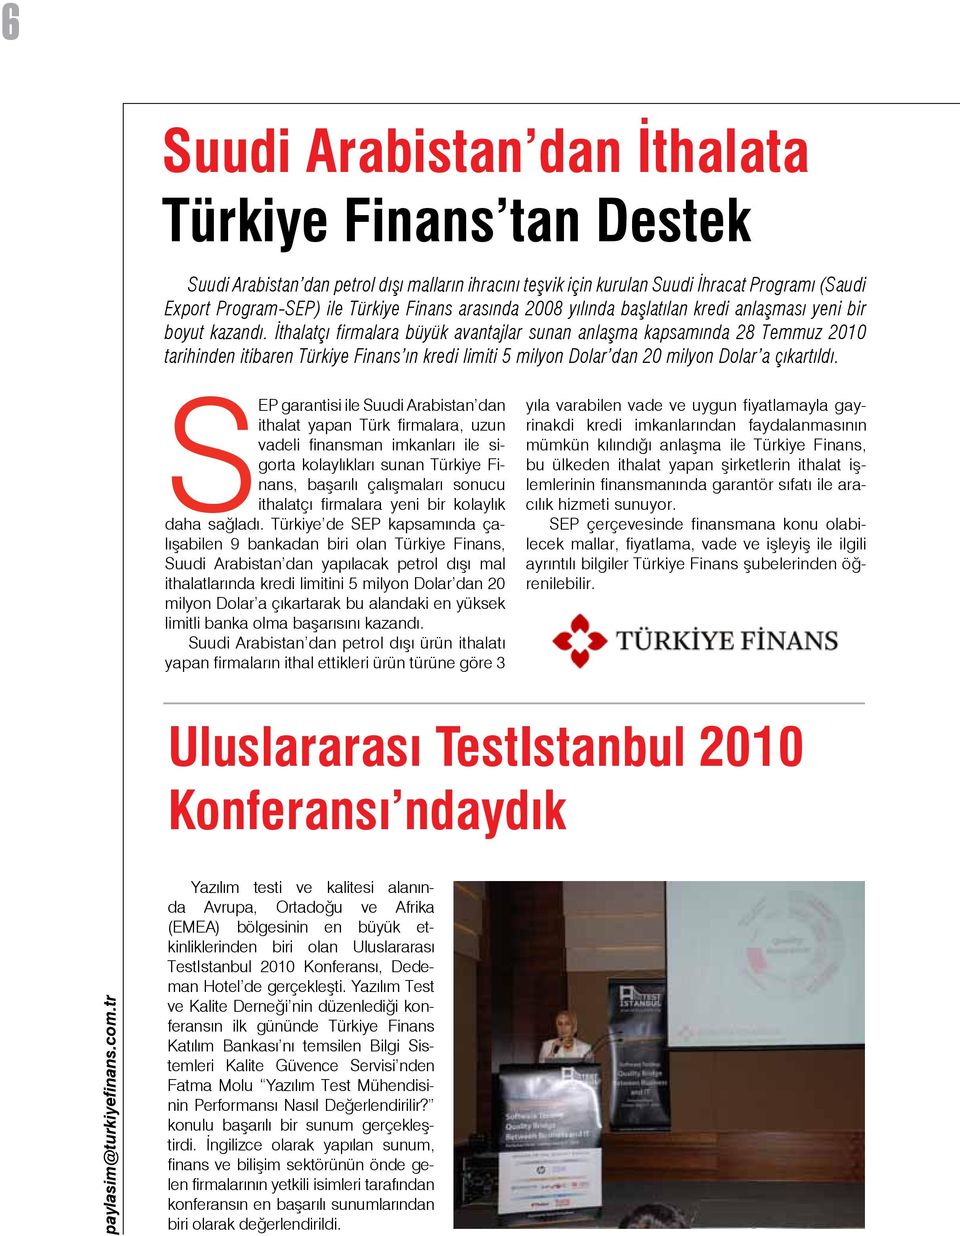 İthalatçı firmalara büyük avantajlar sunan anlaşma kapsamında 28 Temmuz 2010 tarihinden itibaren Türkiye Finans ın kredi limiti 5 milyon Dolar dan 20 milyon Dolar a çıkartıldı.